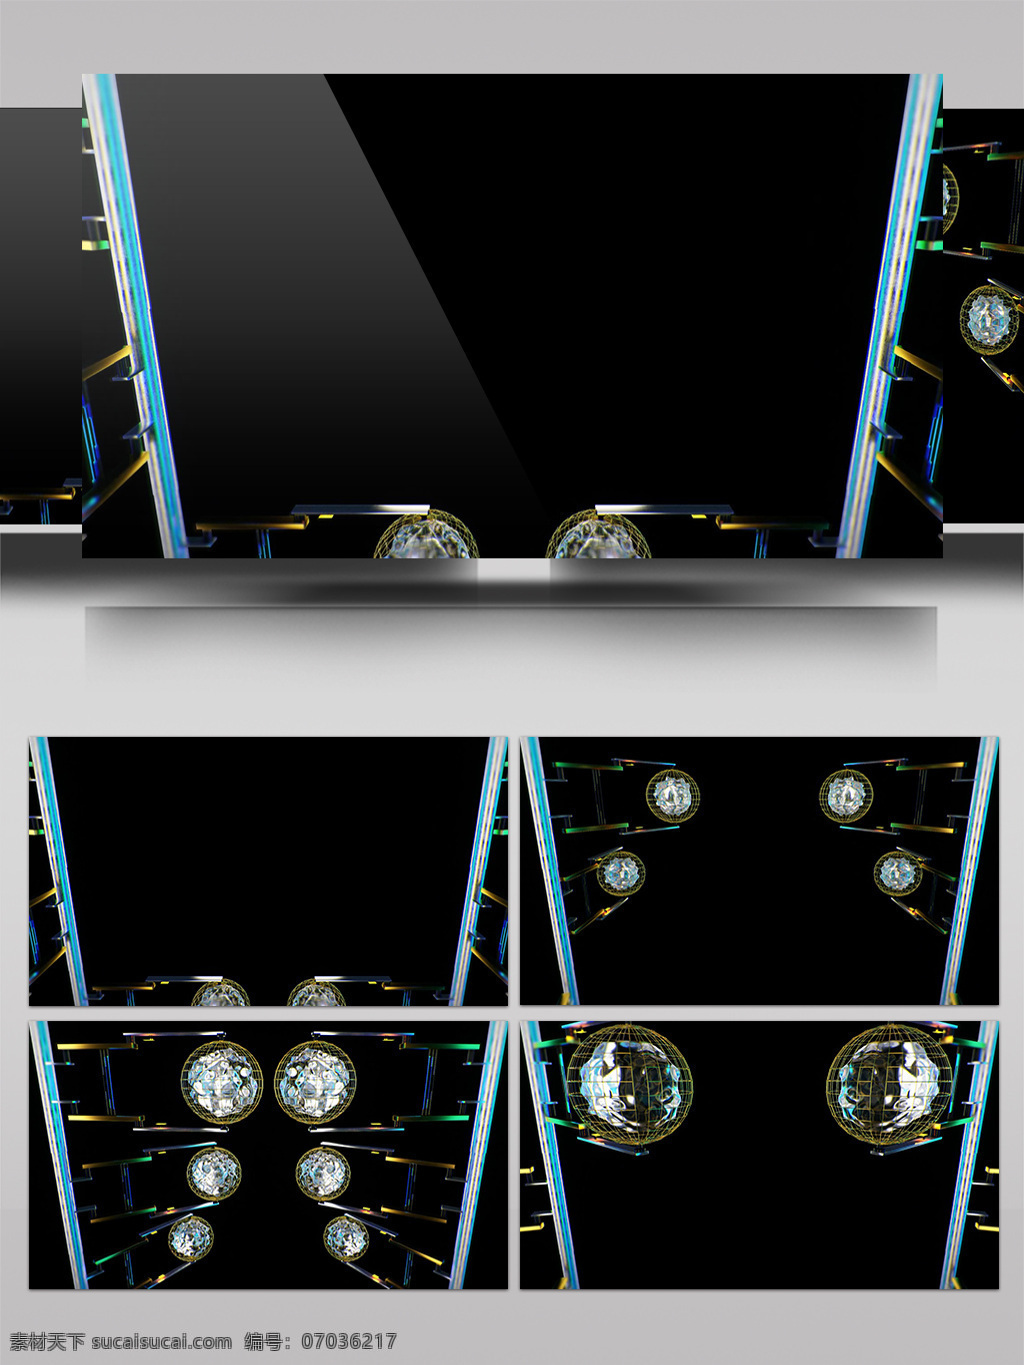 节目 背景 视频 舞台特效 炫酷光求 光斑散射 视觉享受 手机壁纸 电脑屏幕保护 高清视频素材 3d视频素材 特效视频素材